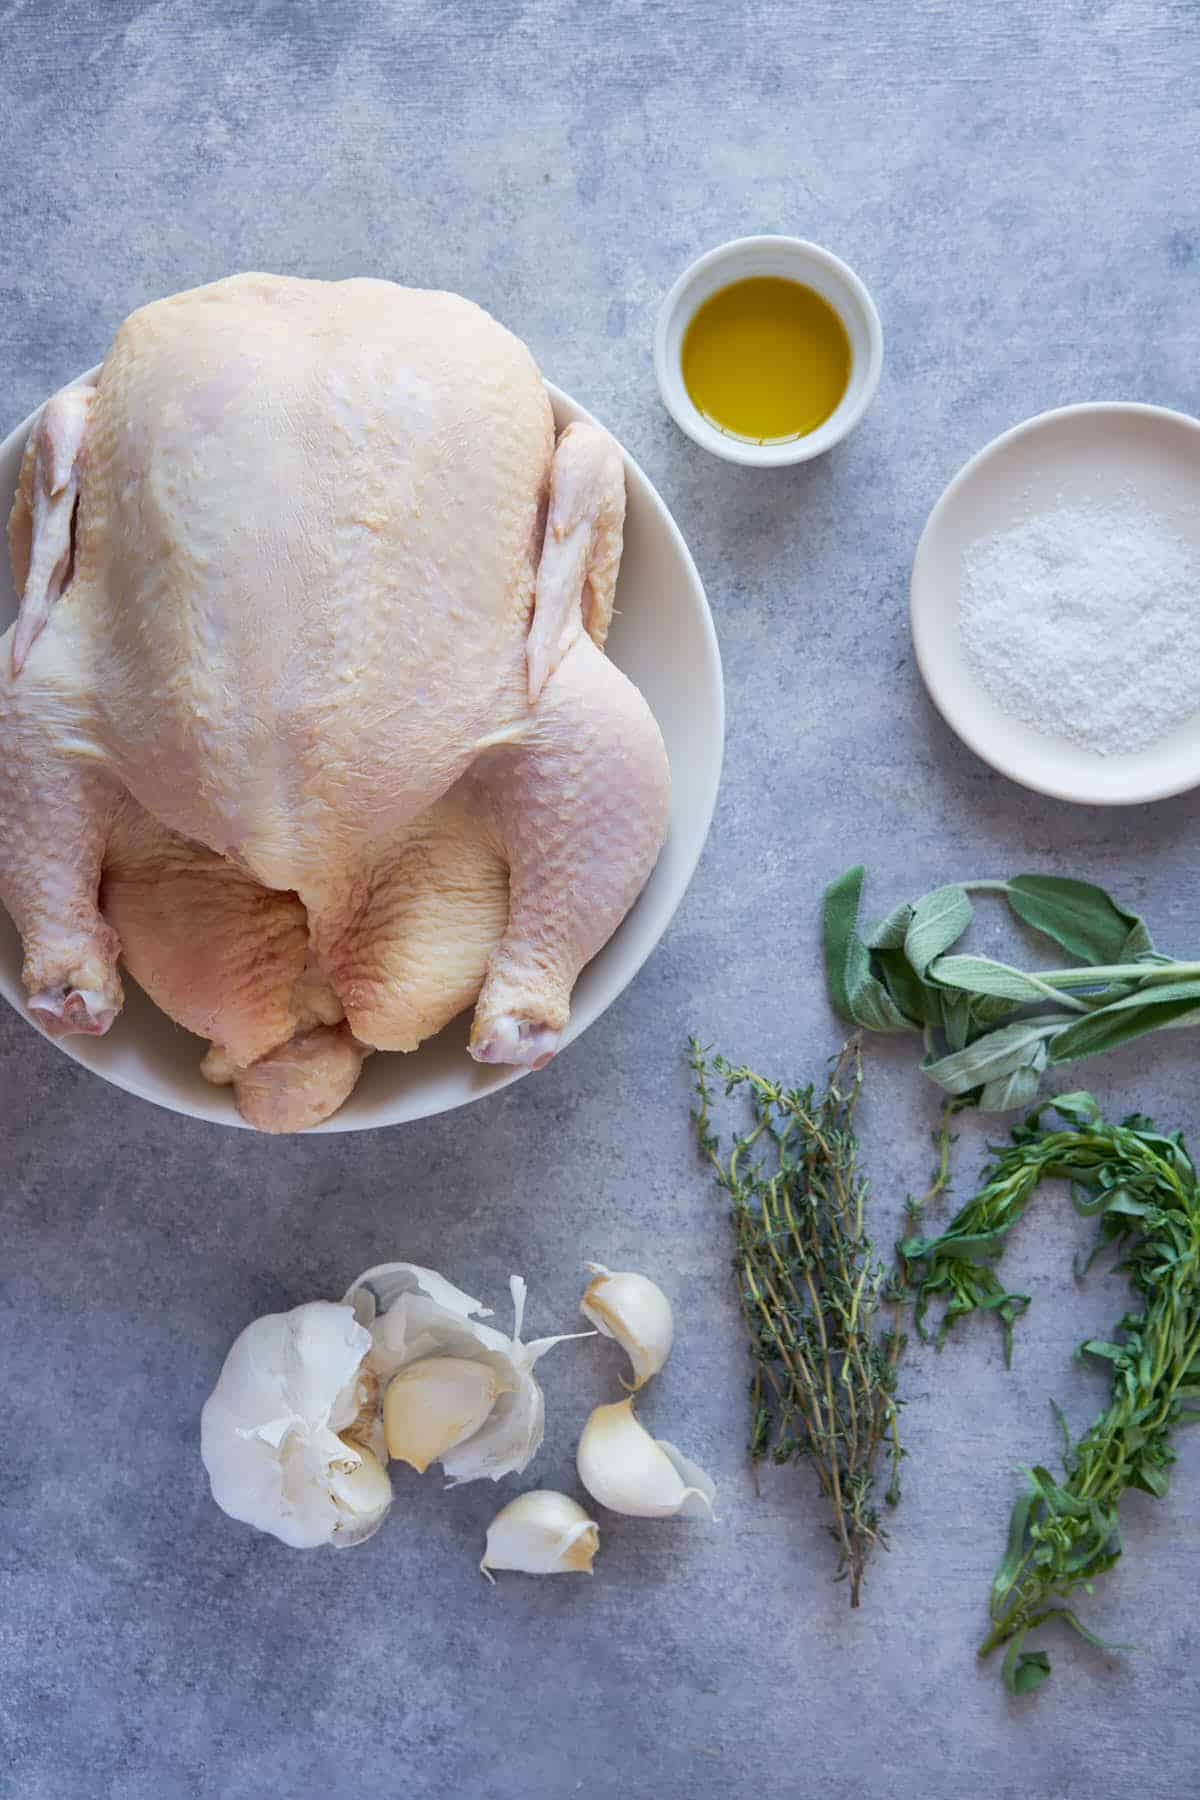 Ingredients to make rotisserie whole chicken. 